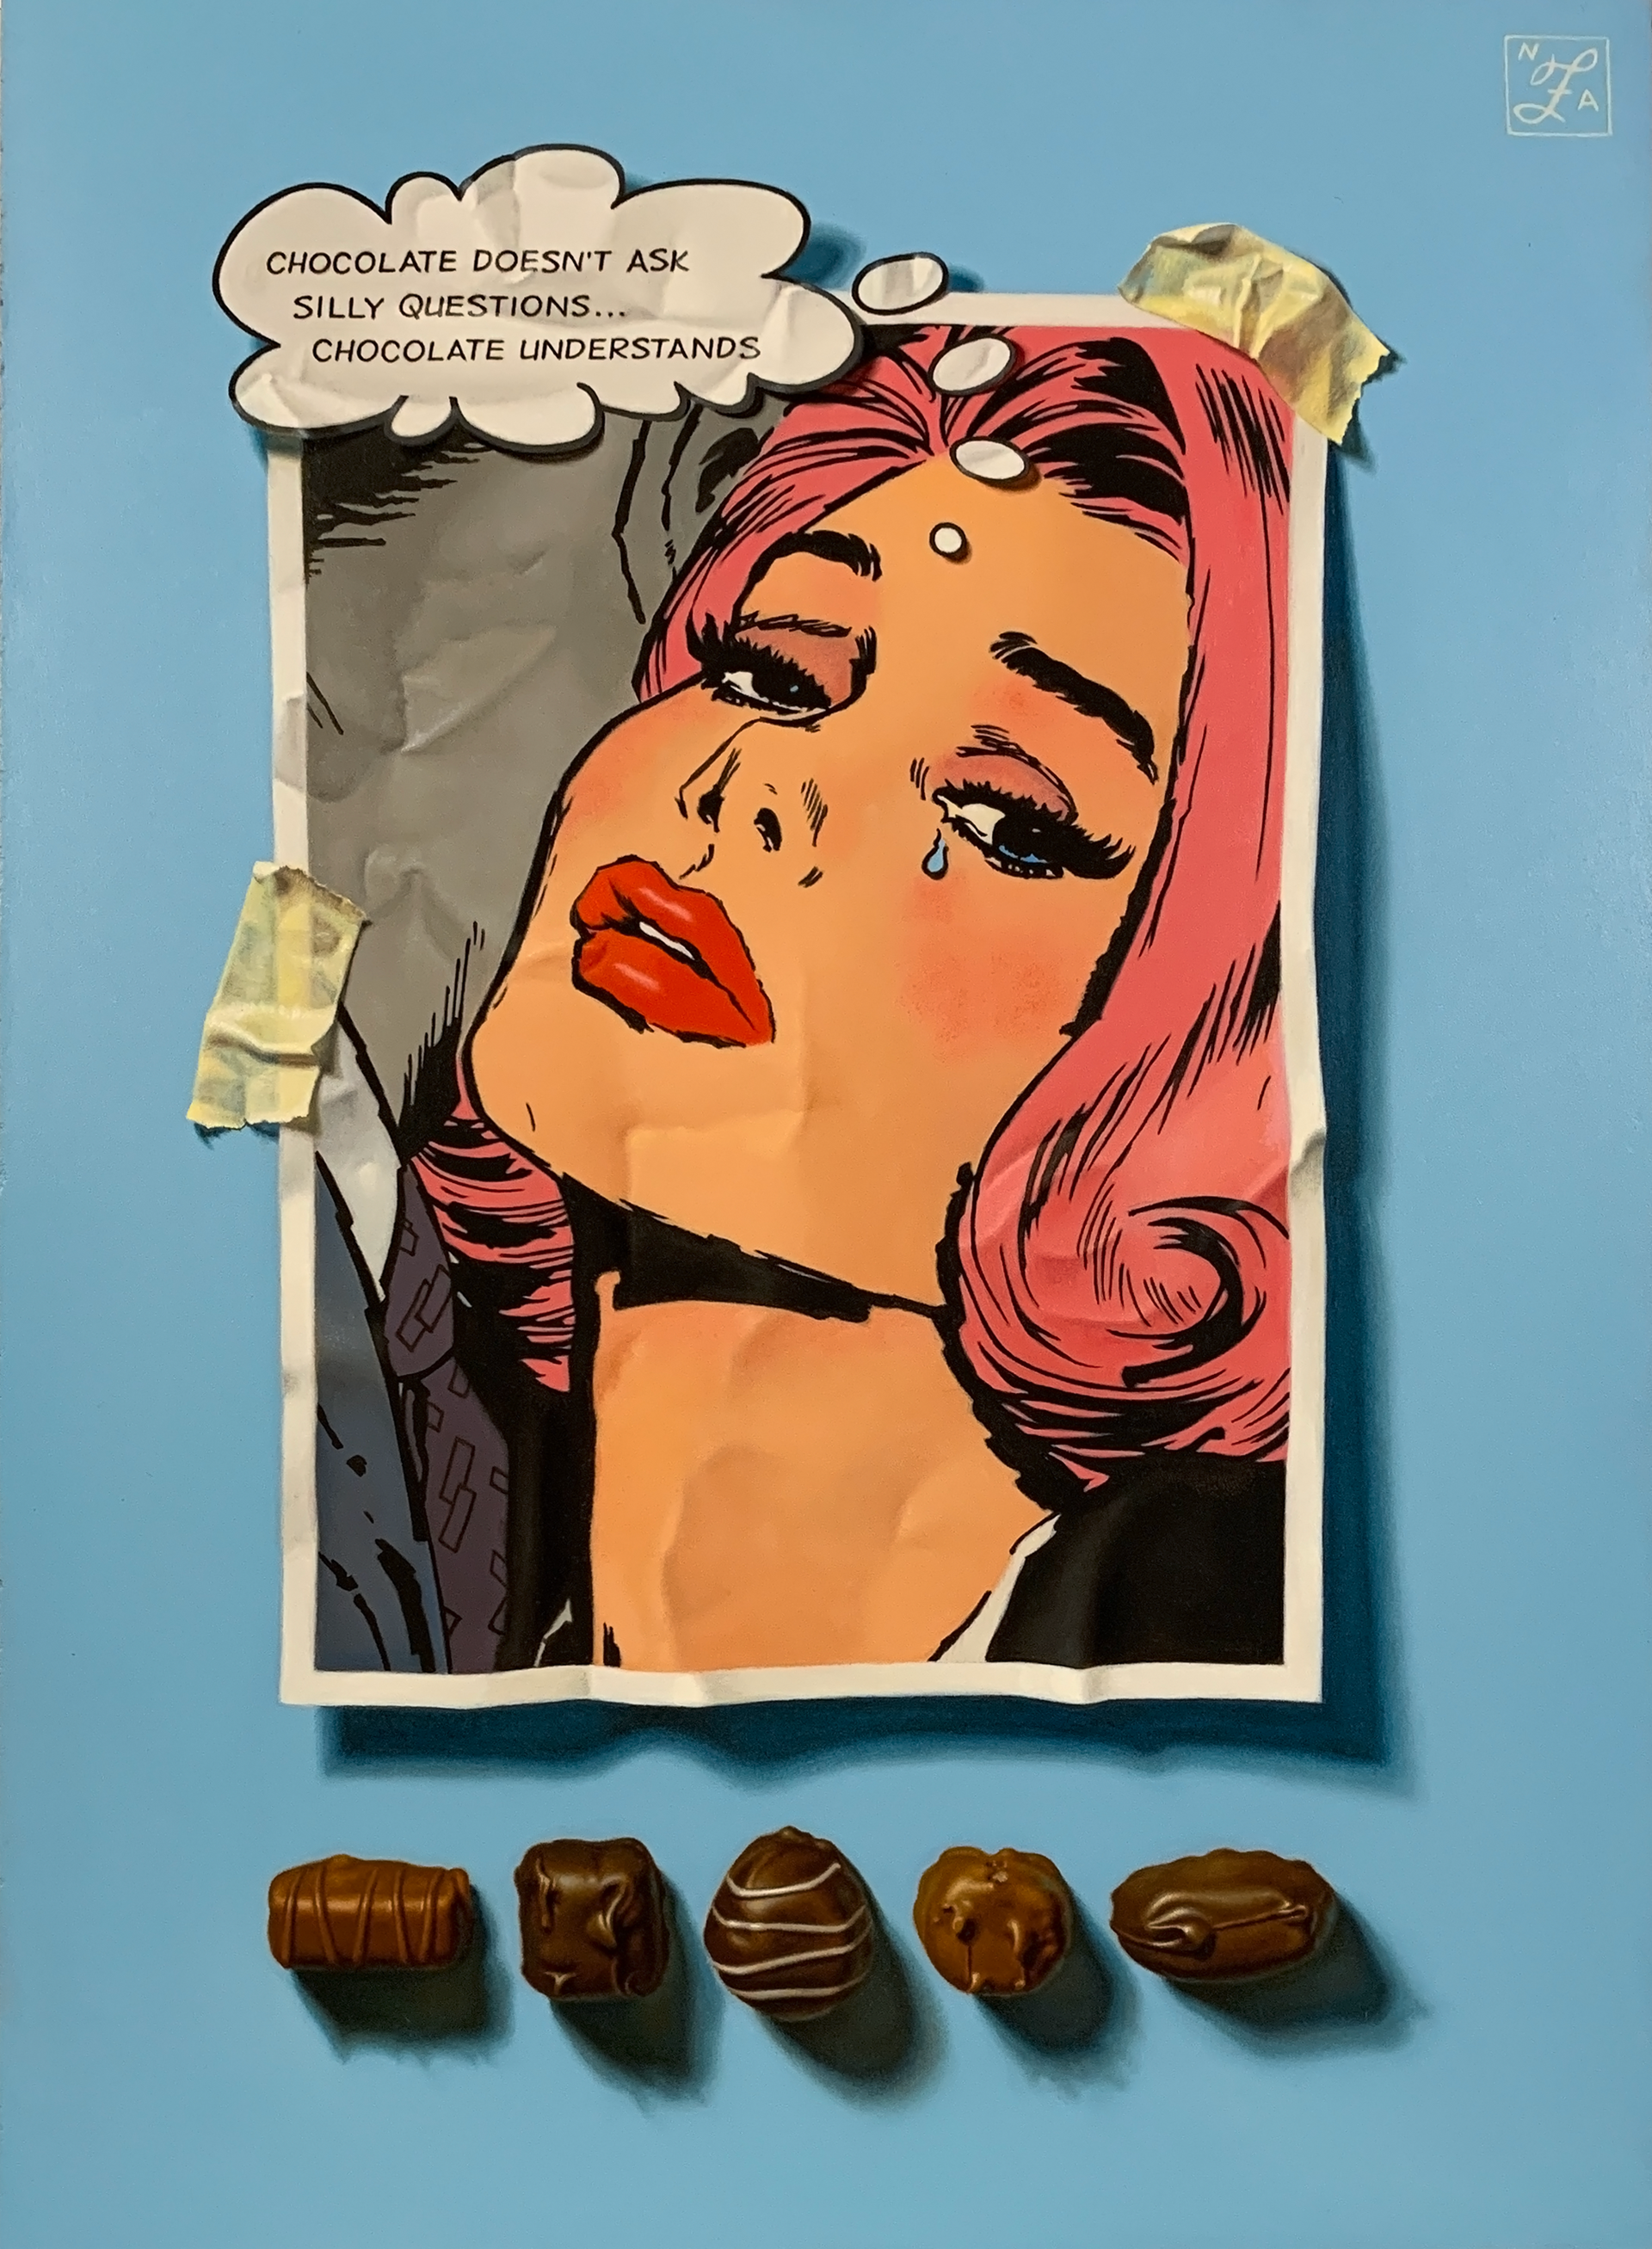 Chocolate Understands by Natalie Featherston